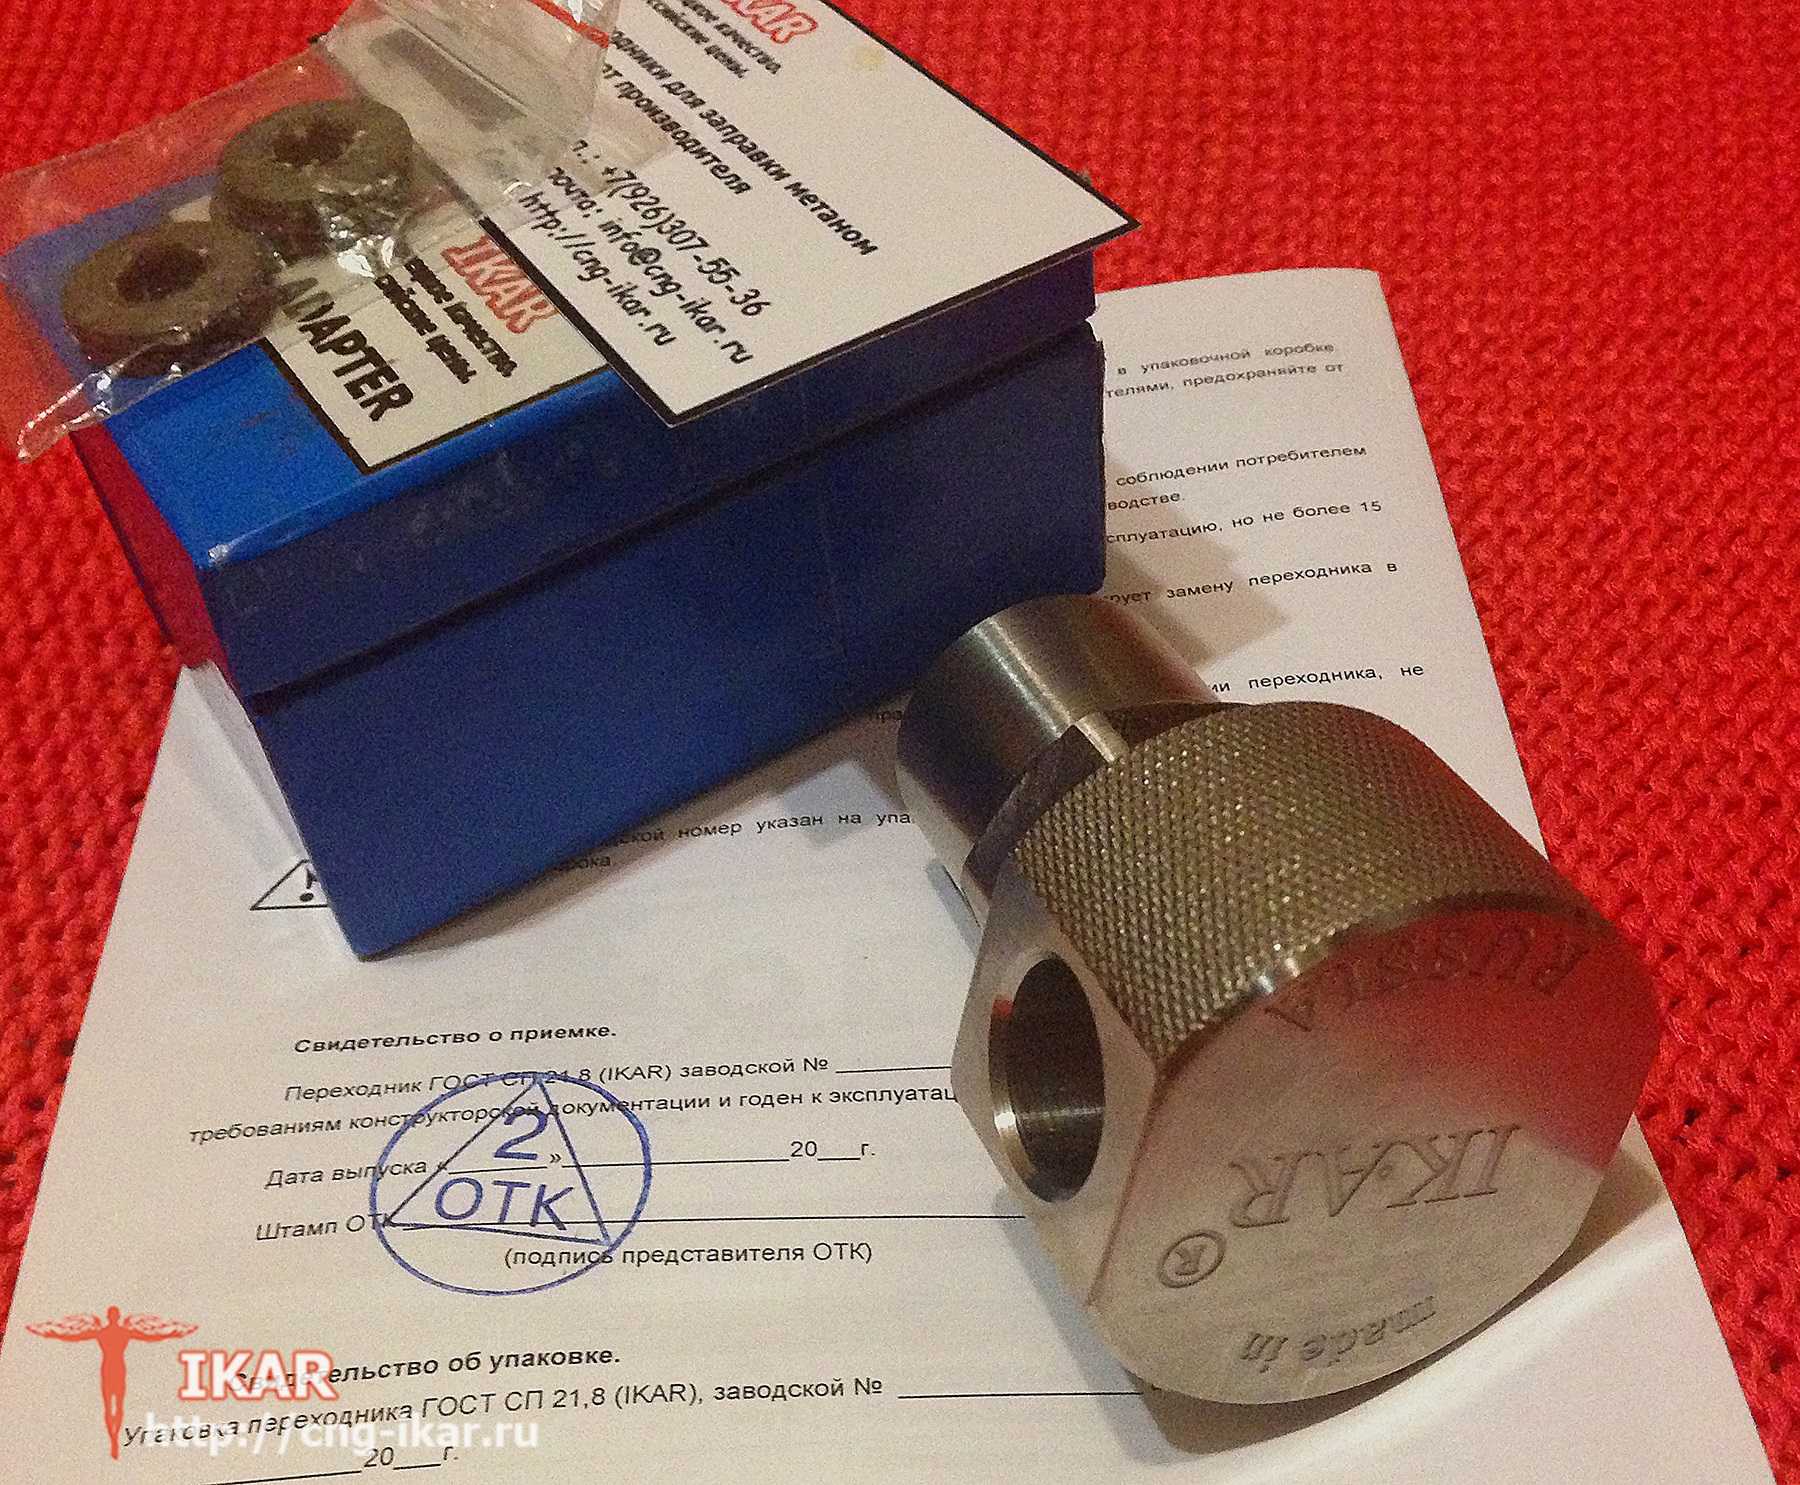 Lada Vesta CNG - оснащена оборудованием под метан европейского стандарта ISO 14469-1 c NGV1 разъемом ВЗУ А на большинстве российских АГНКС установлены колонки с заправочными пальцами стандарта ГОСТ